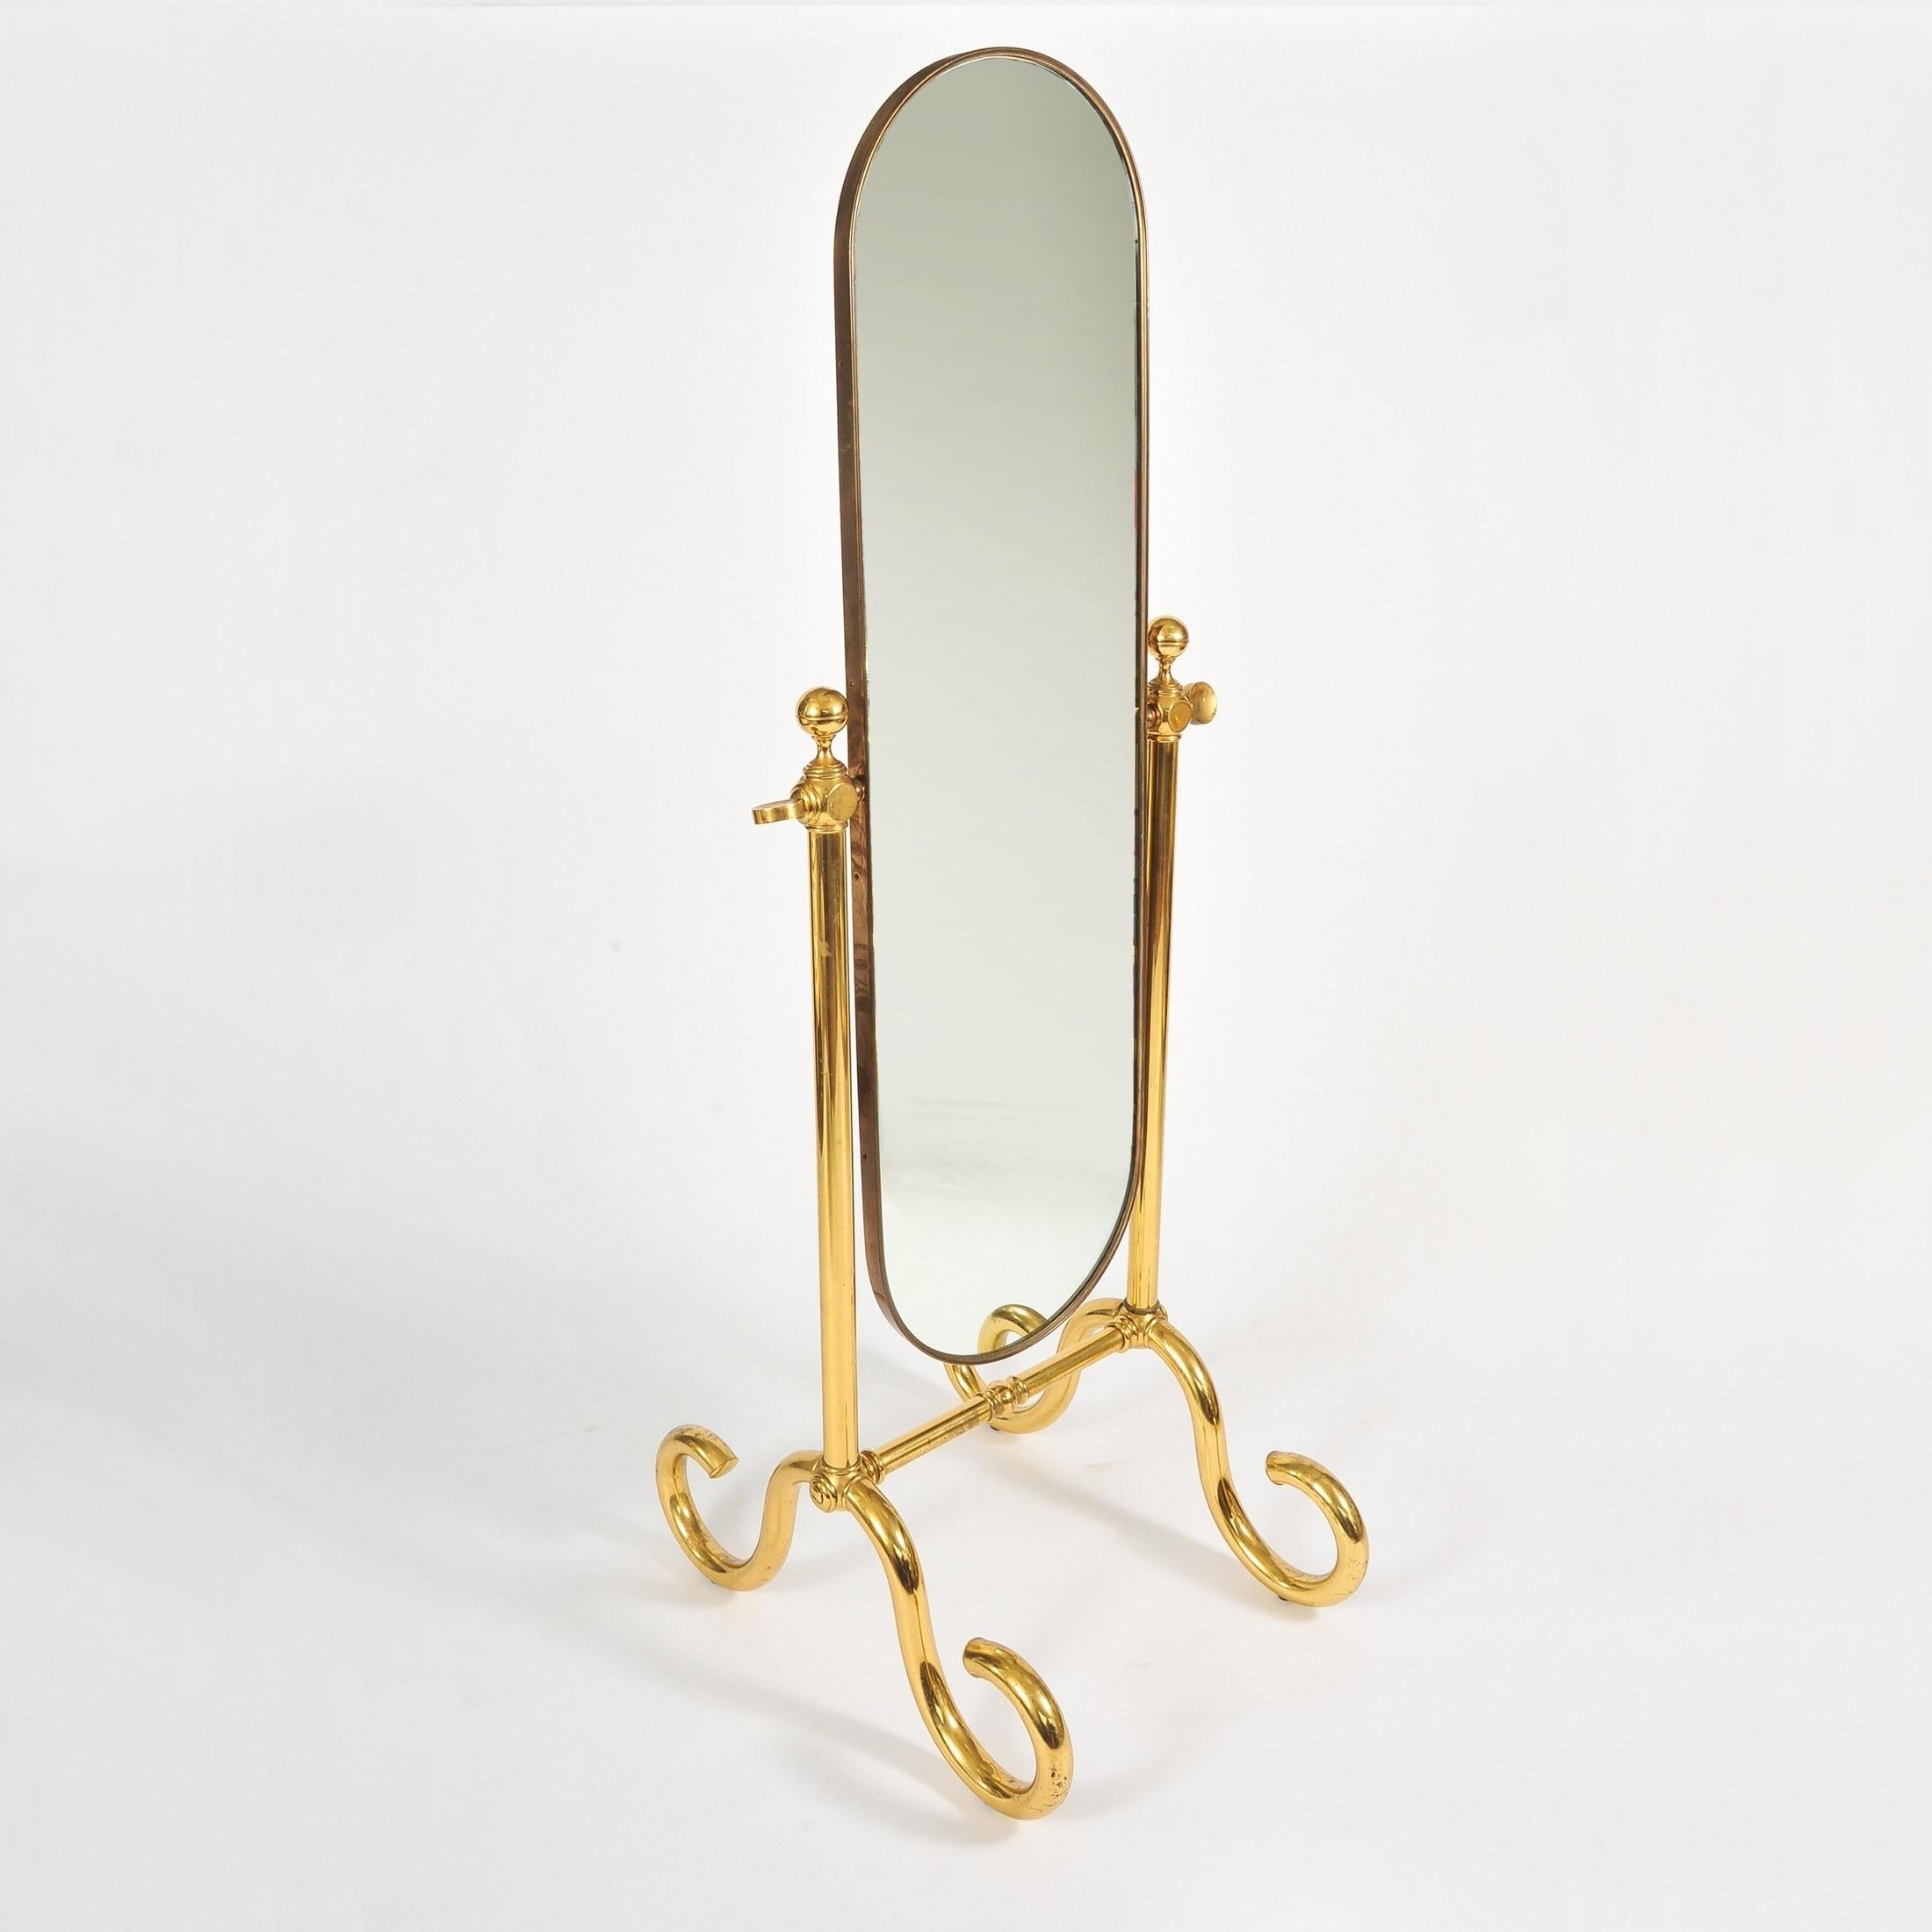 Magnifique miroir sur pied. Le cadre incurvé en laiton est soutenu par deux colonnes en laiton avec des pieds importants en laiton. Le miroir est équilibré et, lorsqu'il est incliné, il conserve sa position.
